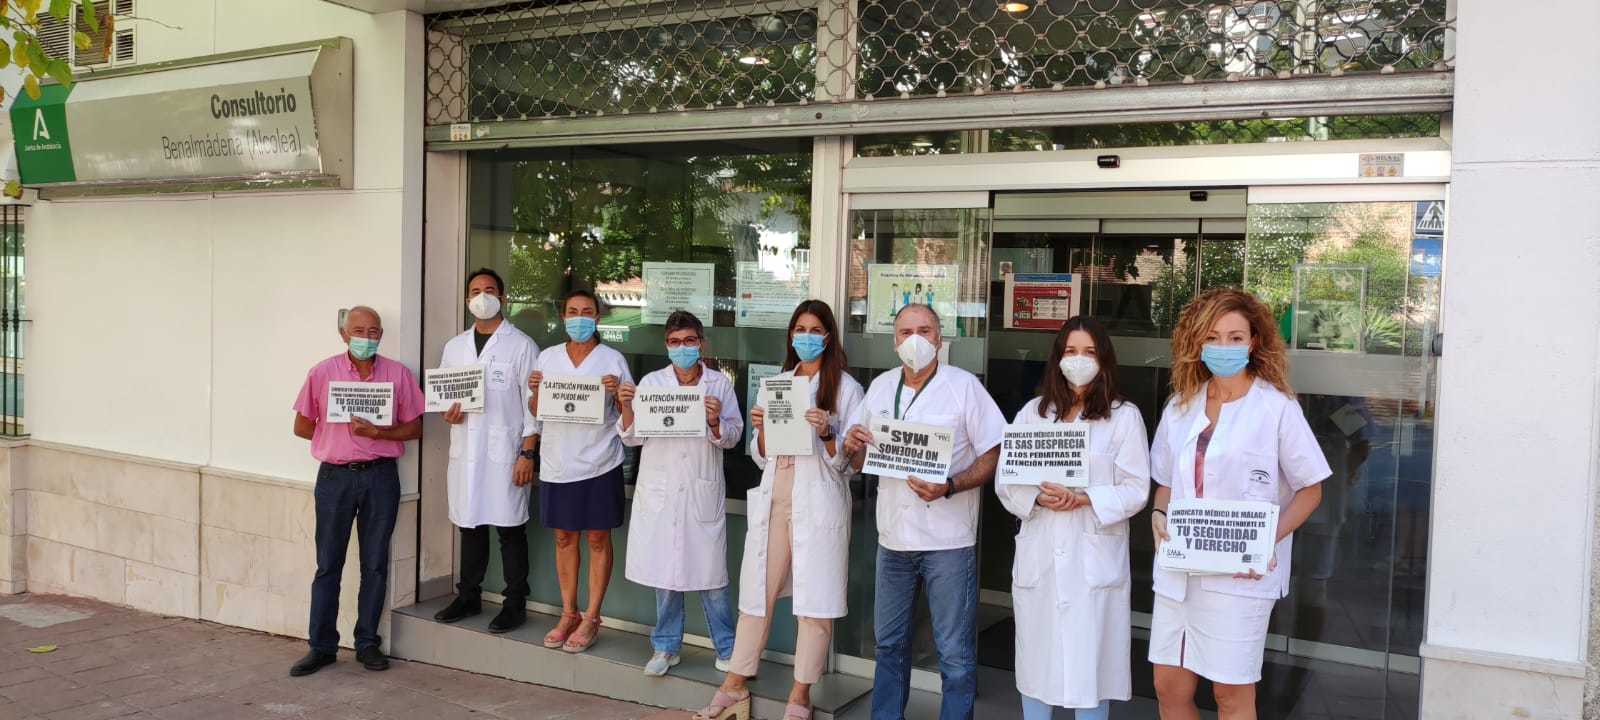 Protesta de sanitarios a las puertas de un consultorio en Benalmdena.